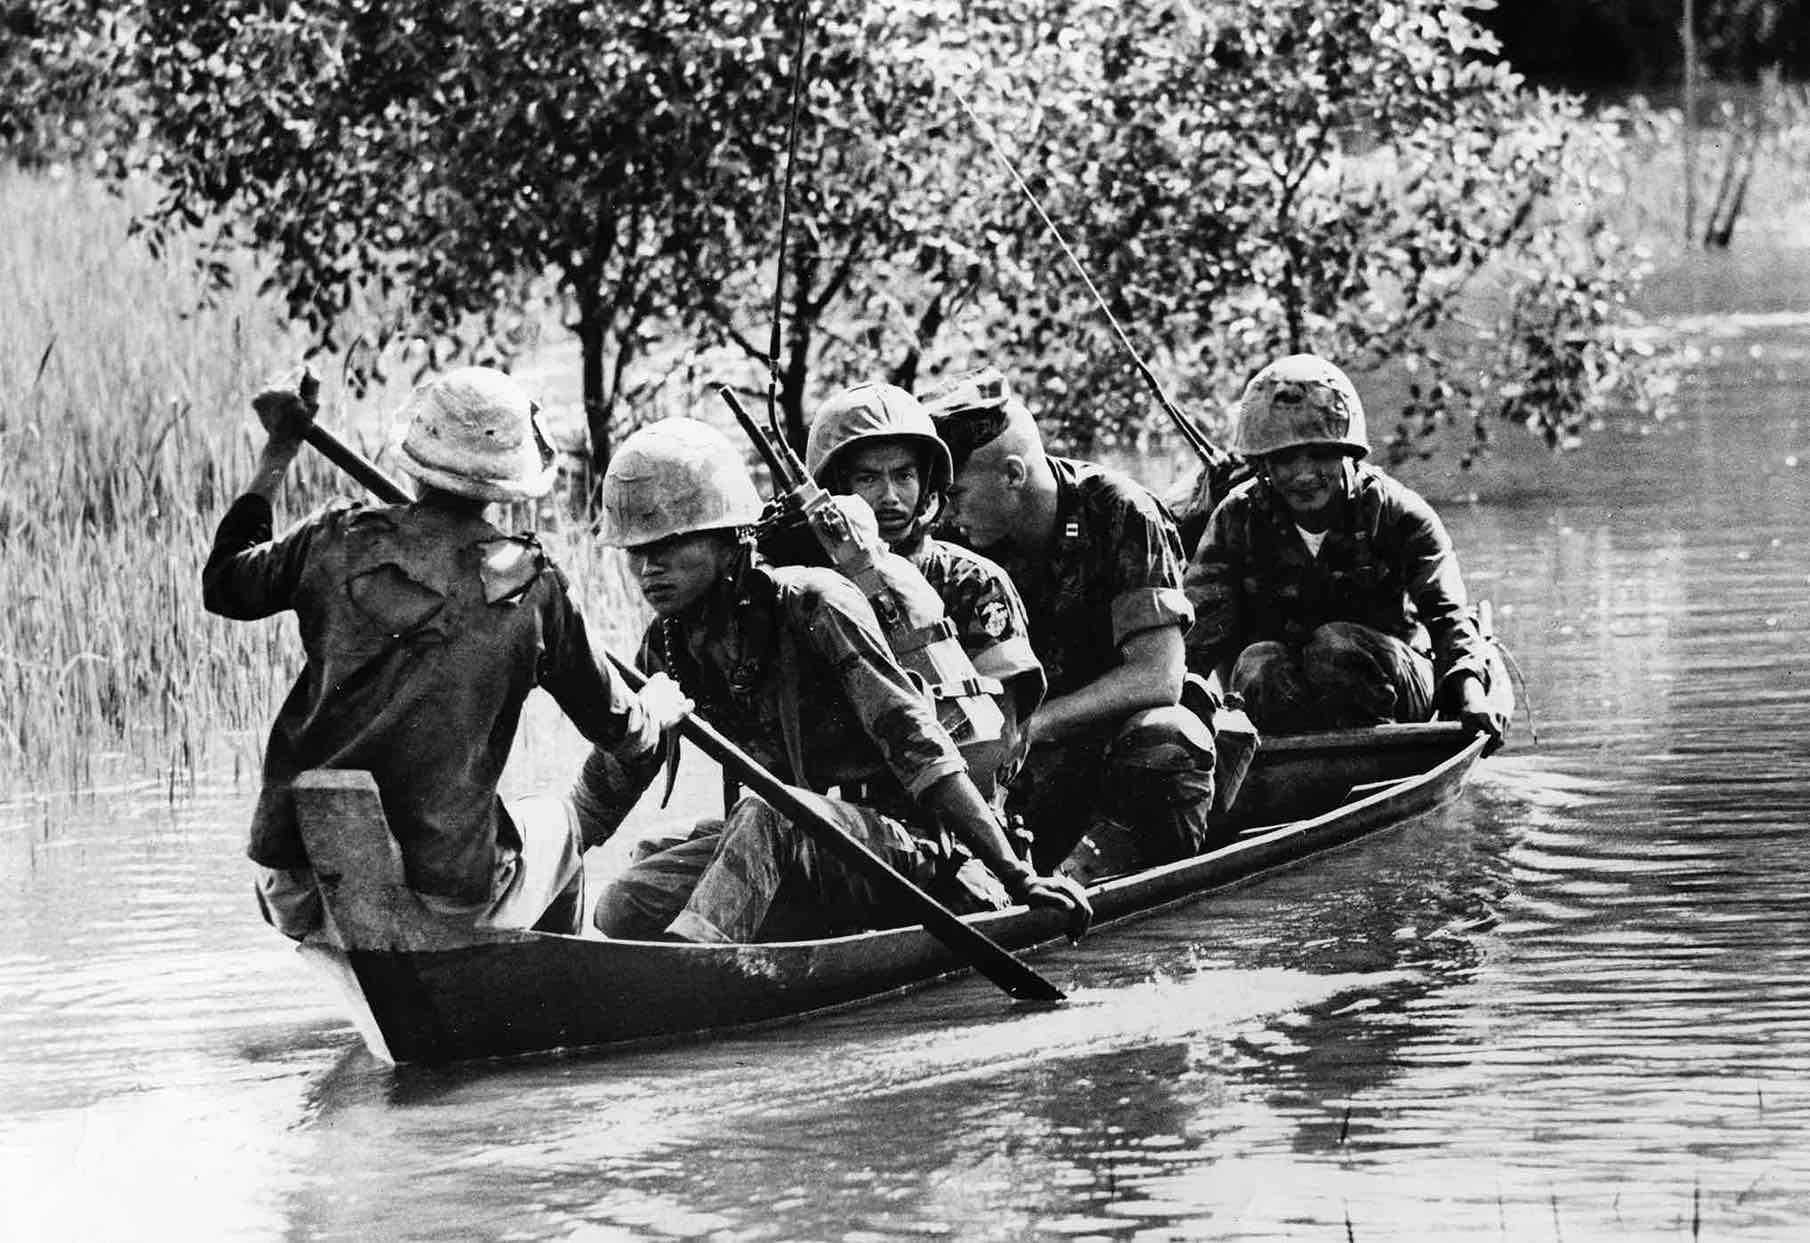 VIETNAM WAR: Conflict and Battles